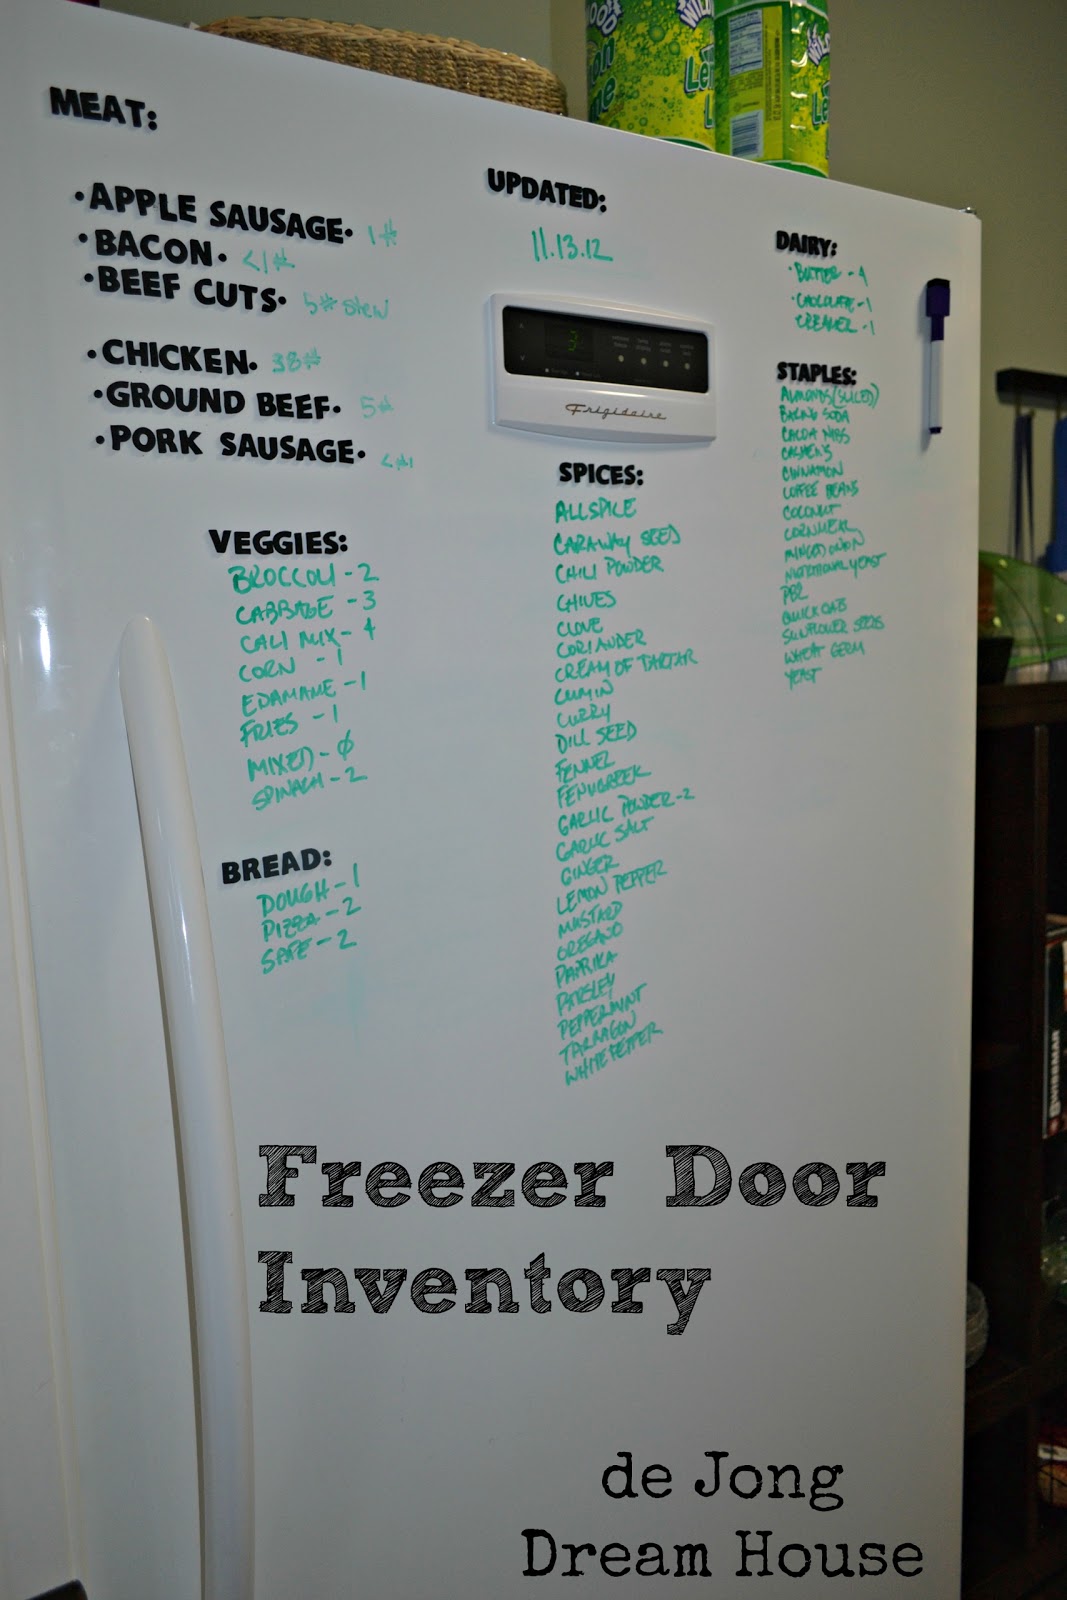 http://3.bp.blogspot.com/-wTEpzyQlxhY/UKo6IYgC9kI/AAAAAAAAD7M/OH3RZ6HFnRI/s1600/freezer+door+inventory.jpg